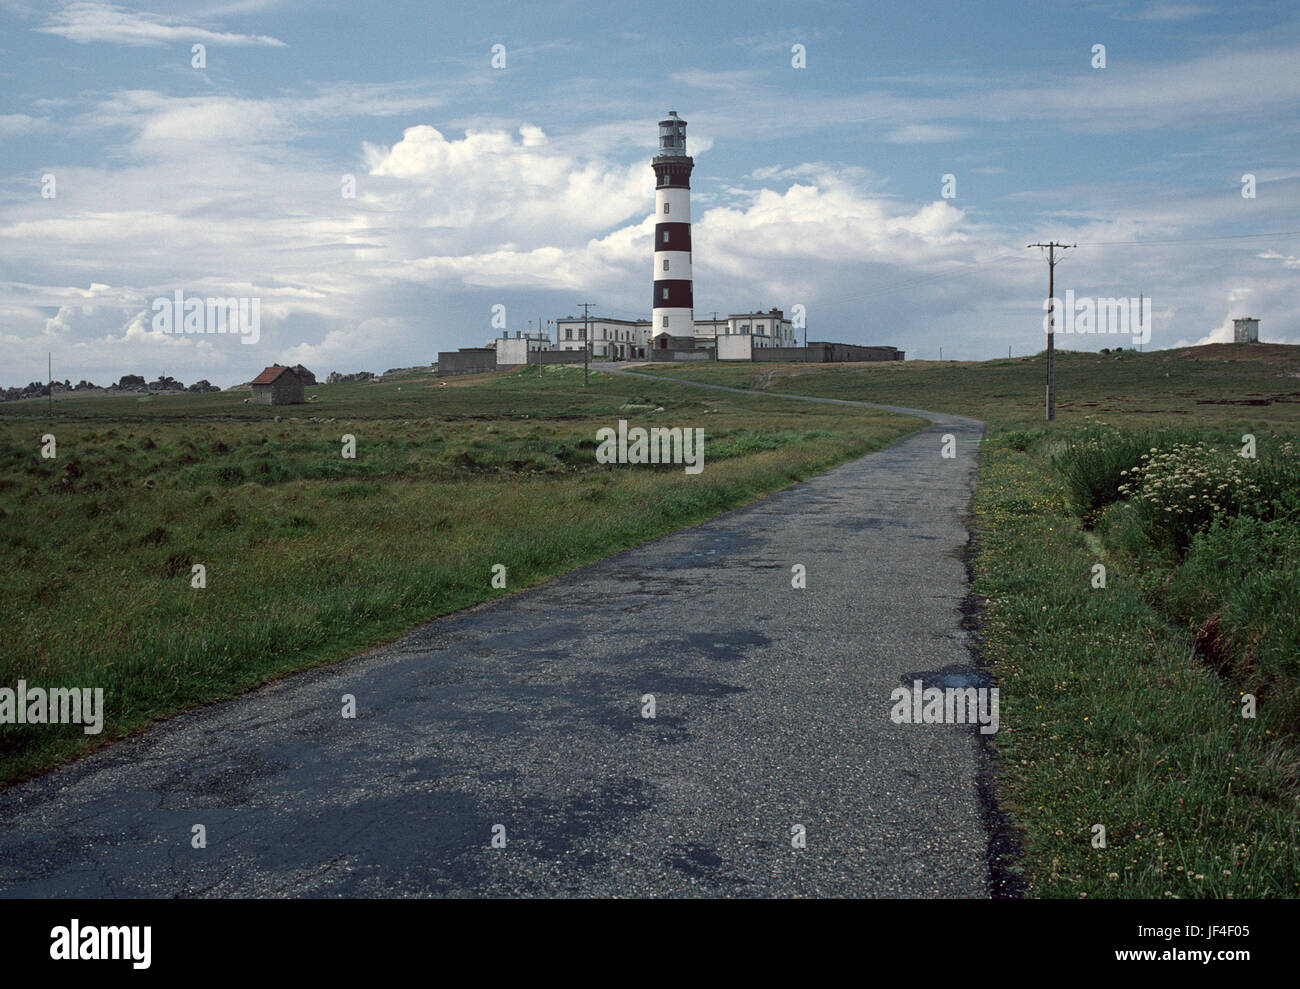 Phare de Creach, Creach lighthouse, Island of Ushant, Brittany, France Stock Photo